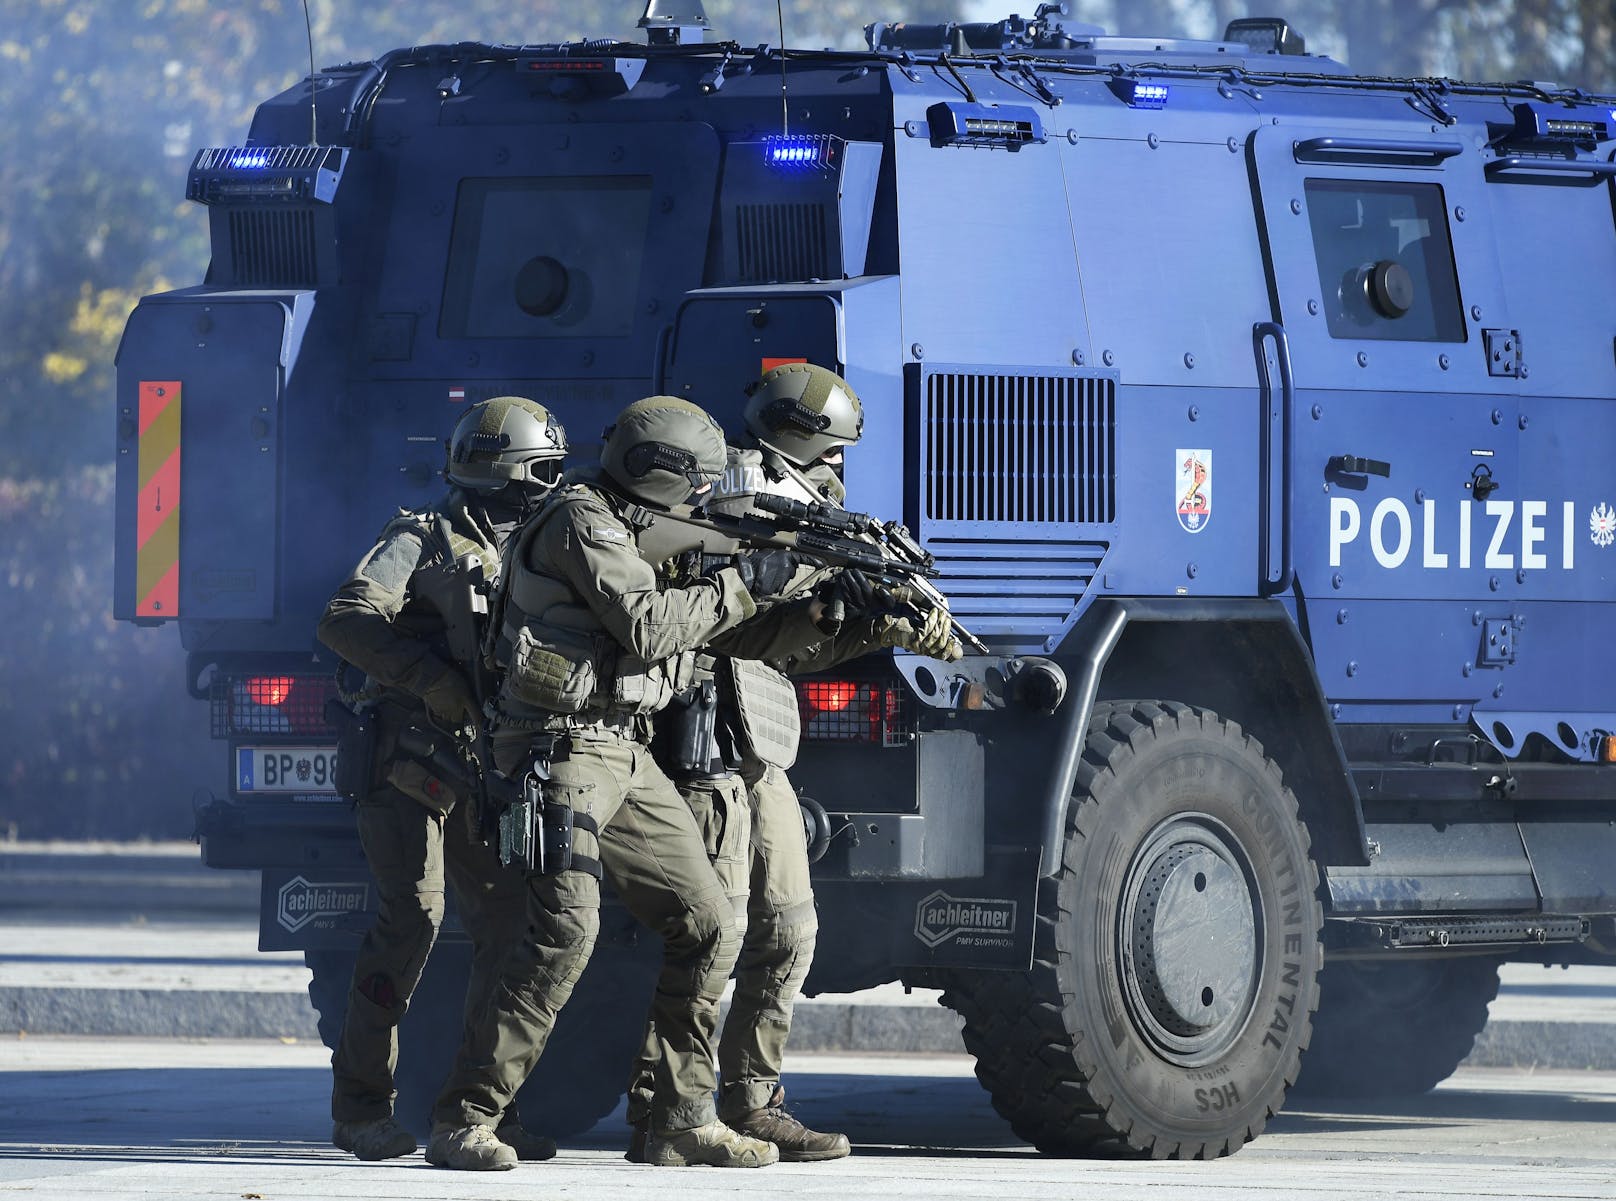 Österreich erhöht die Terrorwarnstufe angesichts islamistischer Bedrohung.